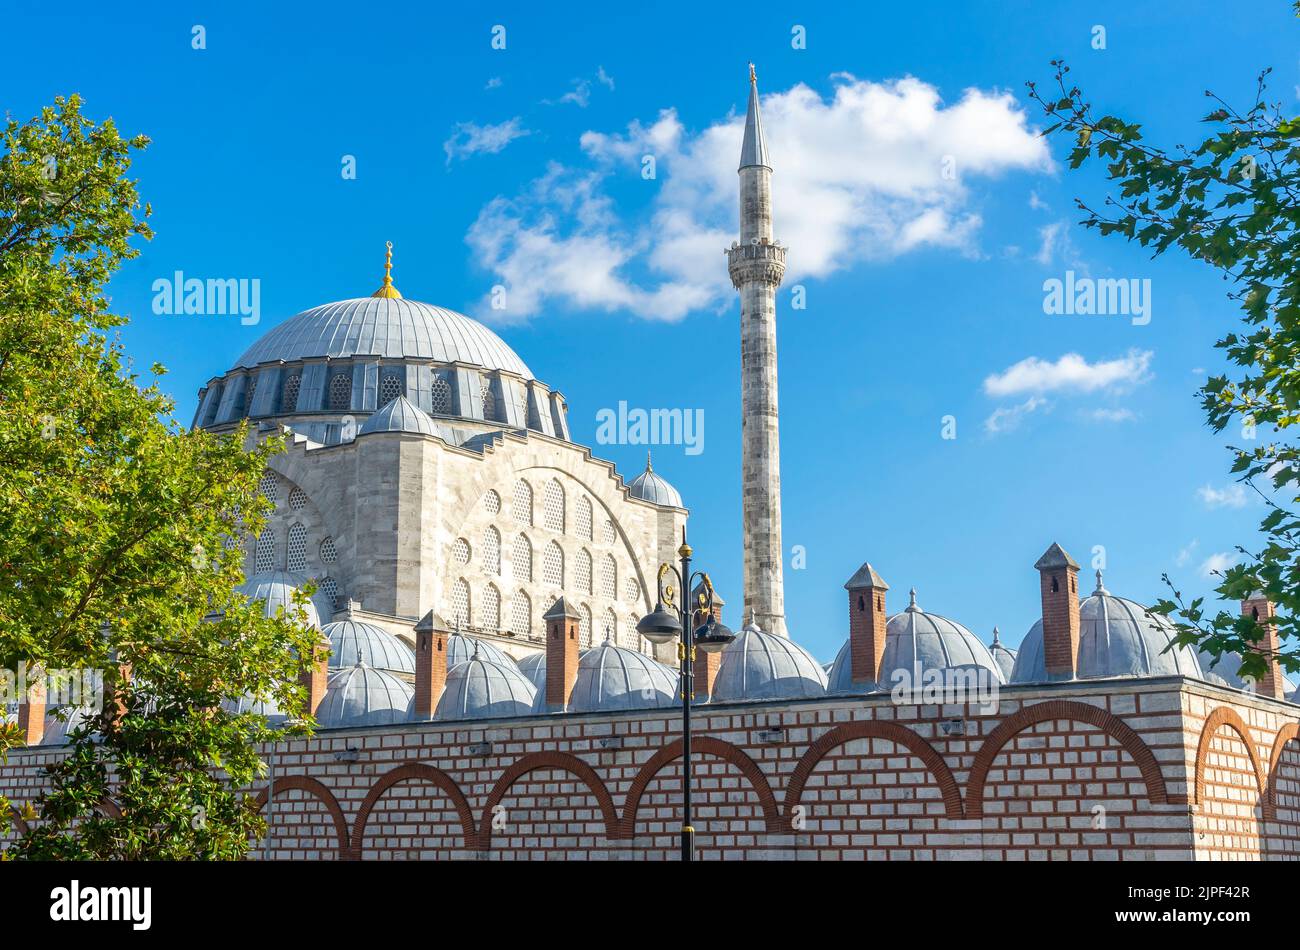 Moschea del Sultano di Mihrimah (Mihrimah Sultan Camii) - moschea ottomana costruita nel 1570. Architetto Mimar Sinan. Edirnekapı, Istanbul, Turchia Foto Stock